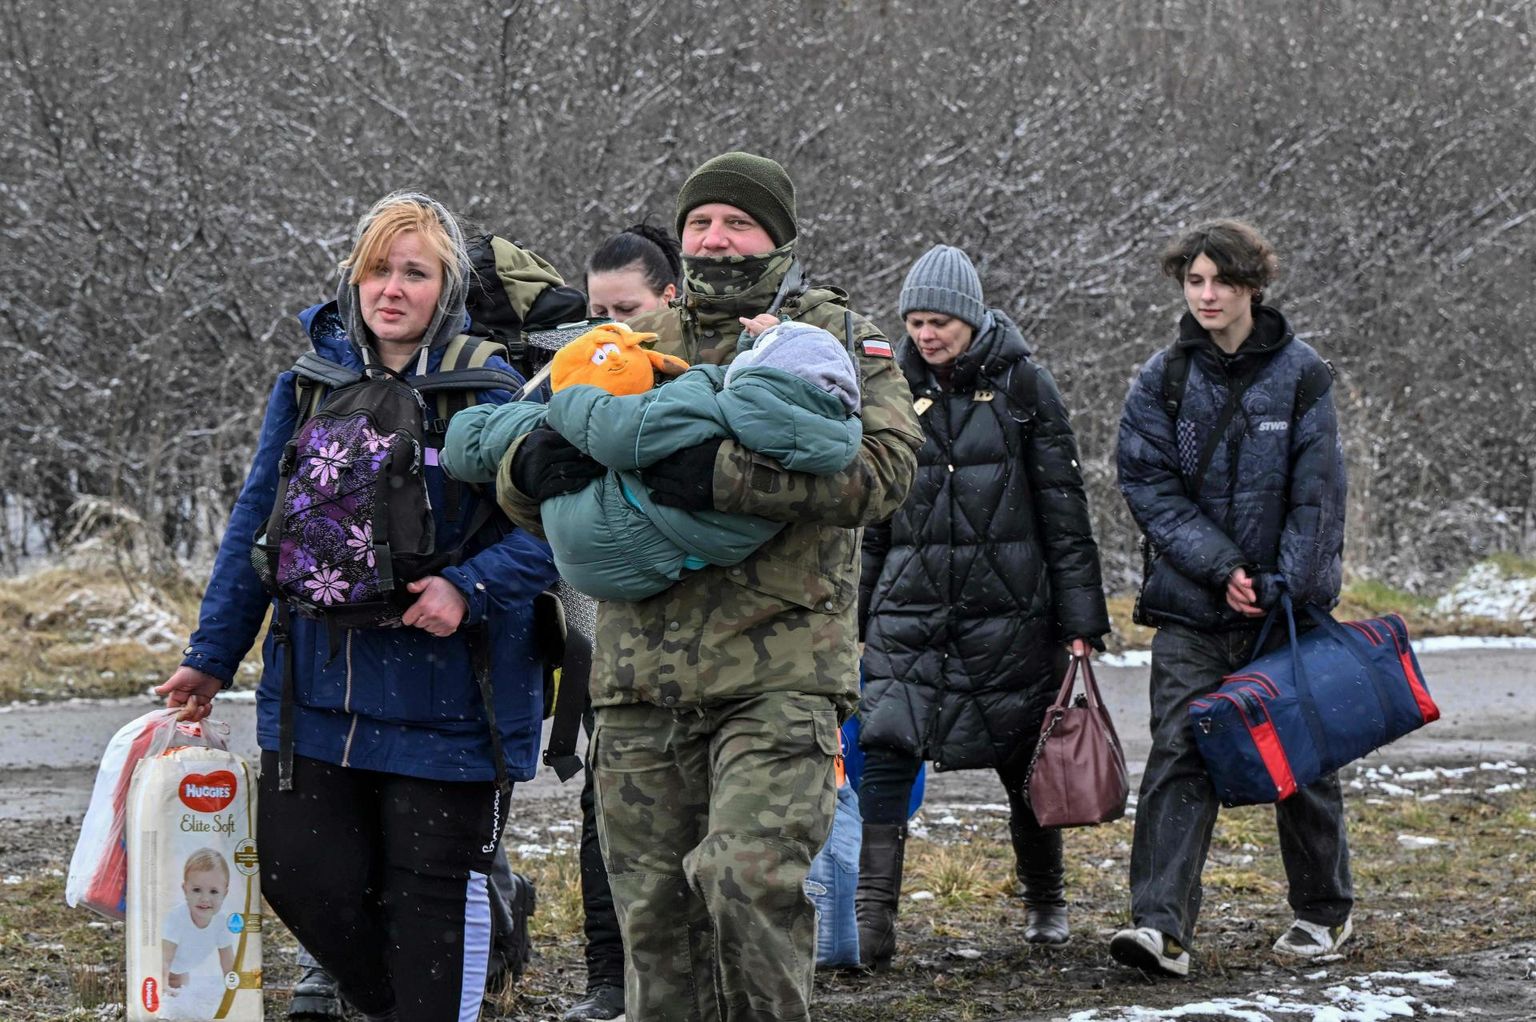 Poola piirivalvur abistamas Ukrainast tulevaid sõjapõgenikke üle Medyka piiripunkti.